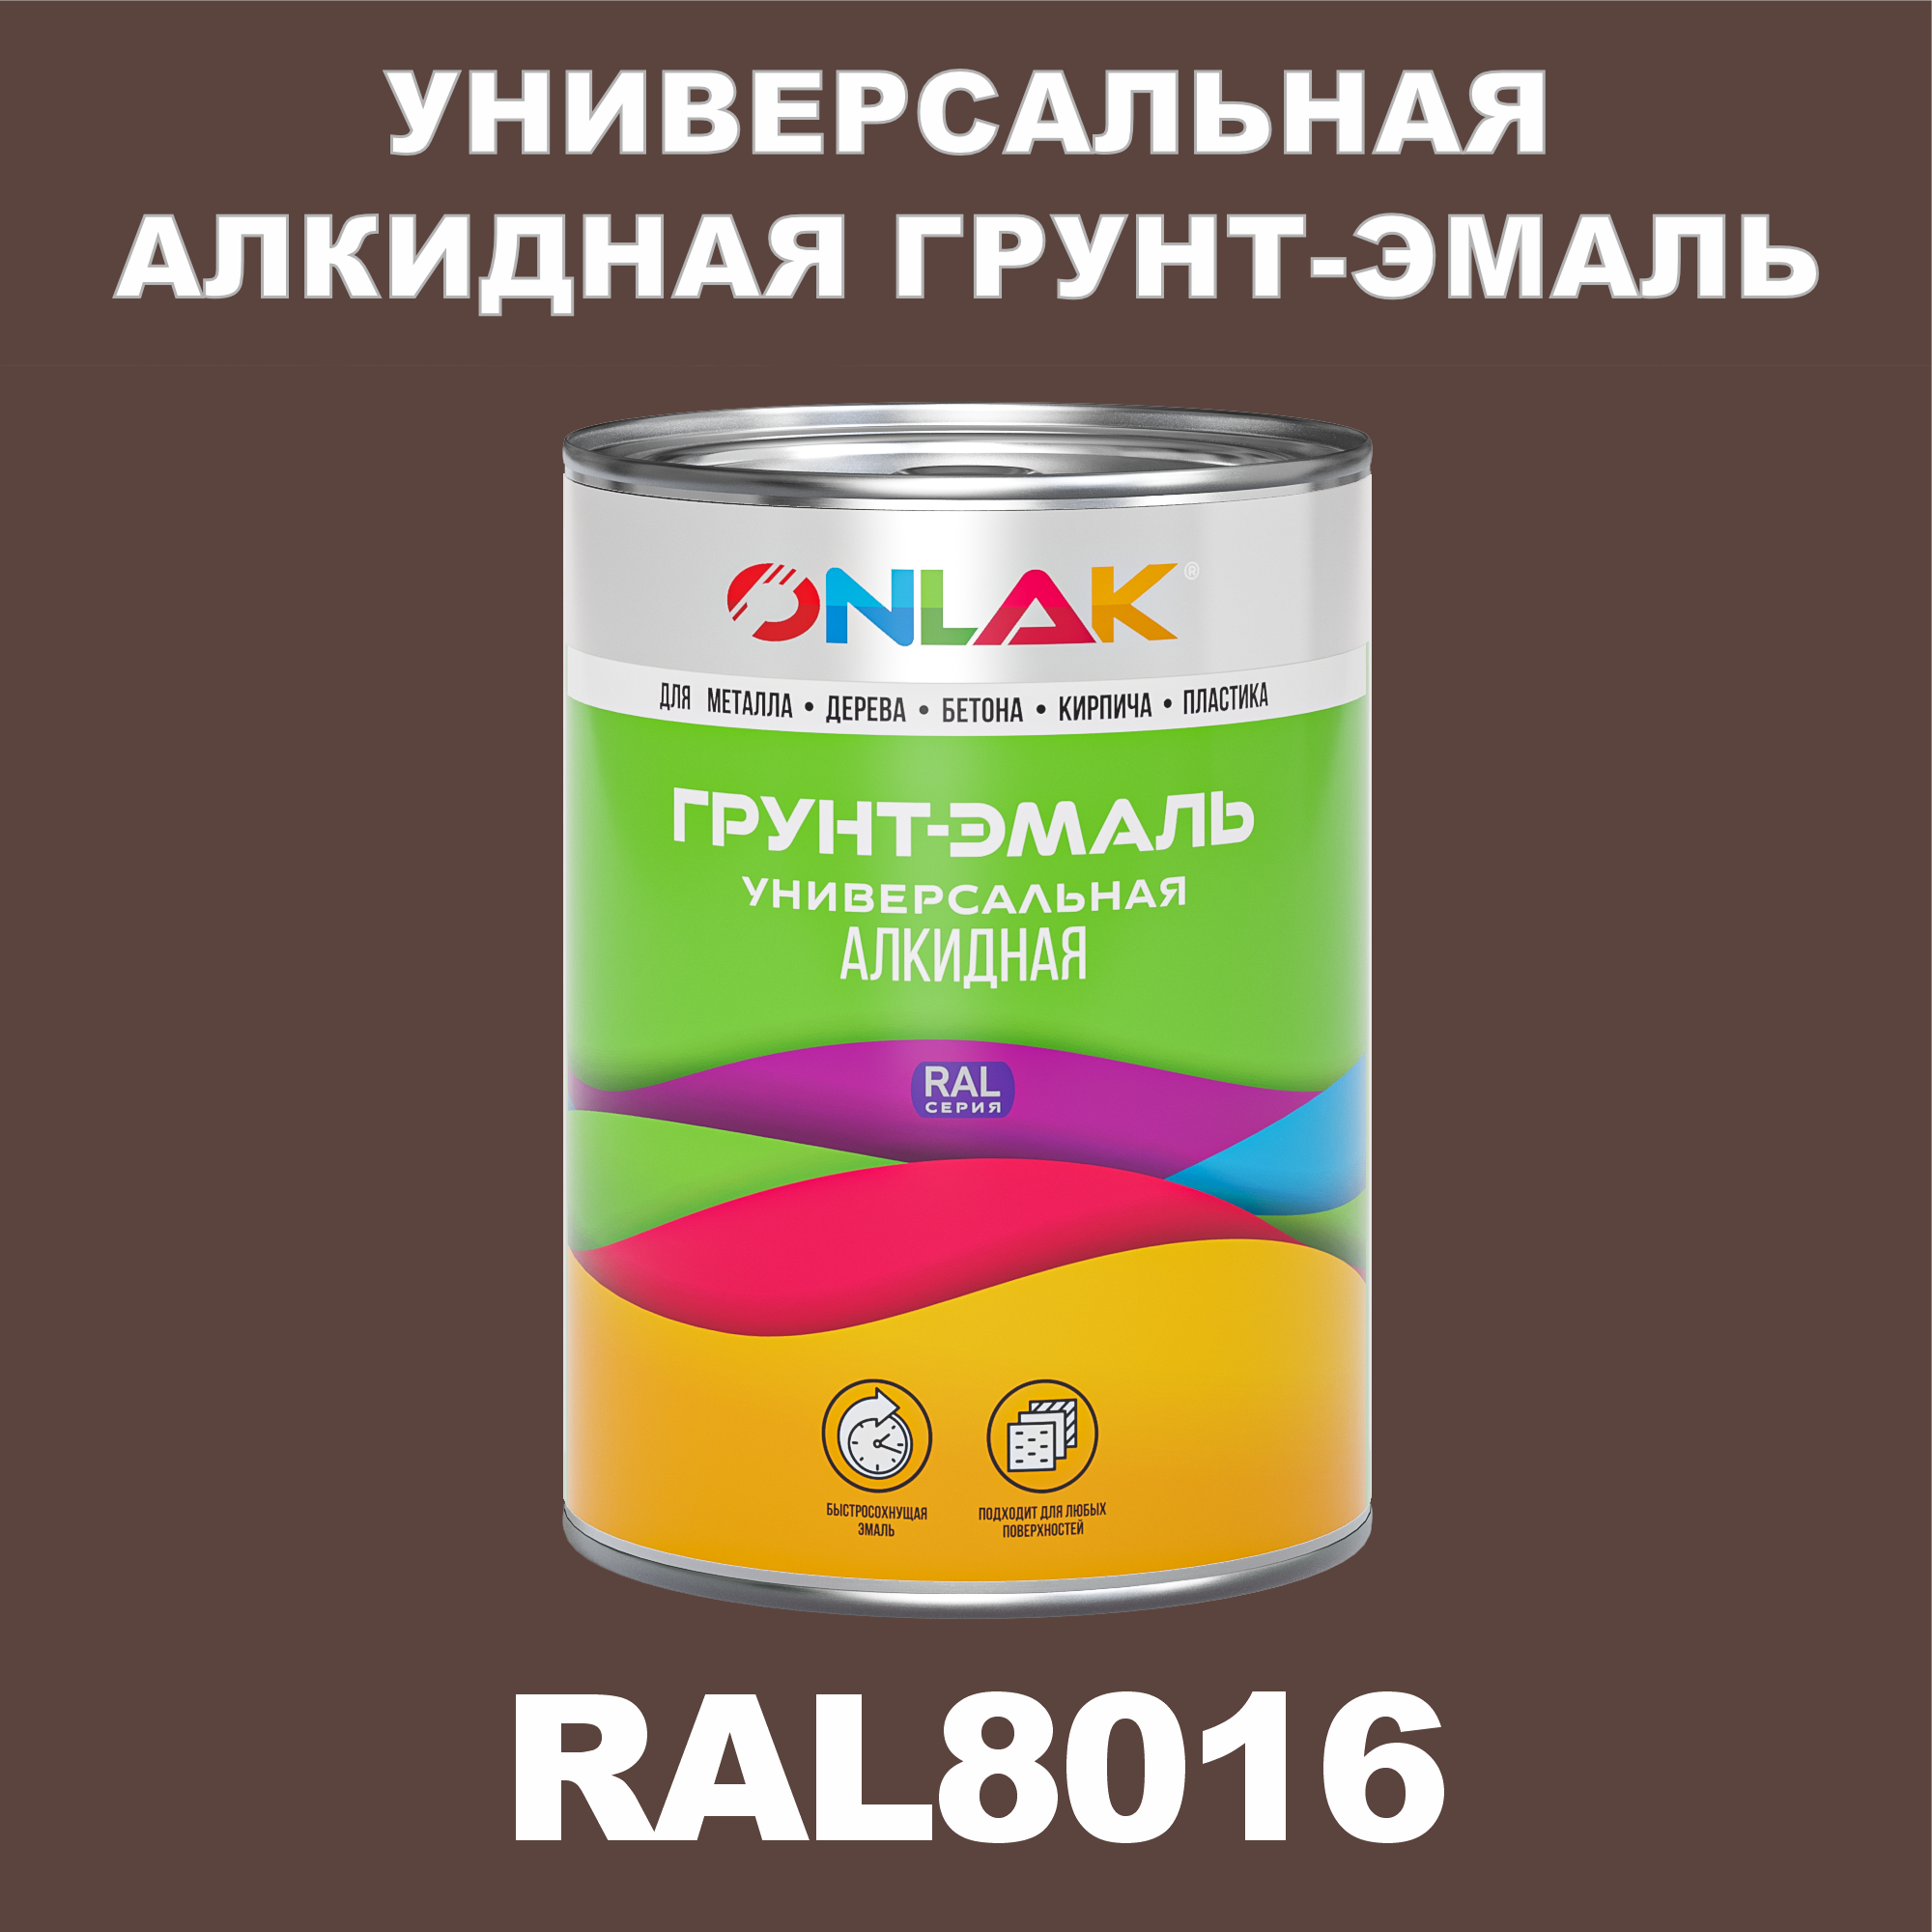 Грунт-эмаль ONLAK 1К RAL8016 антикоррозионная алкидная по металлу по ржавчине 1 кг